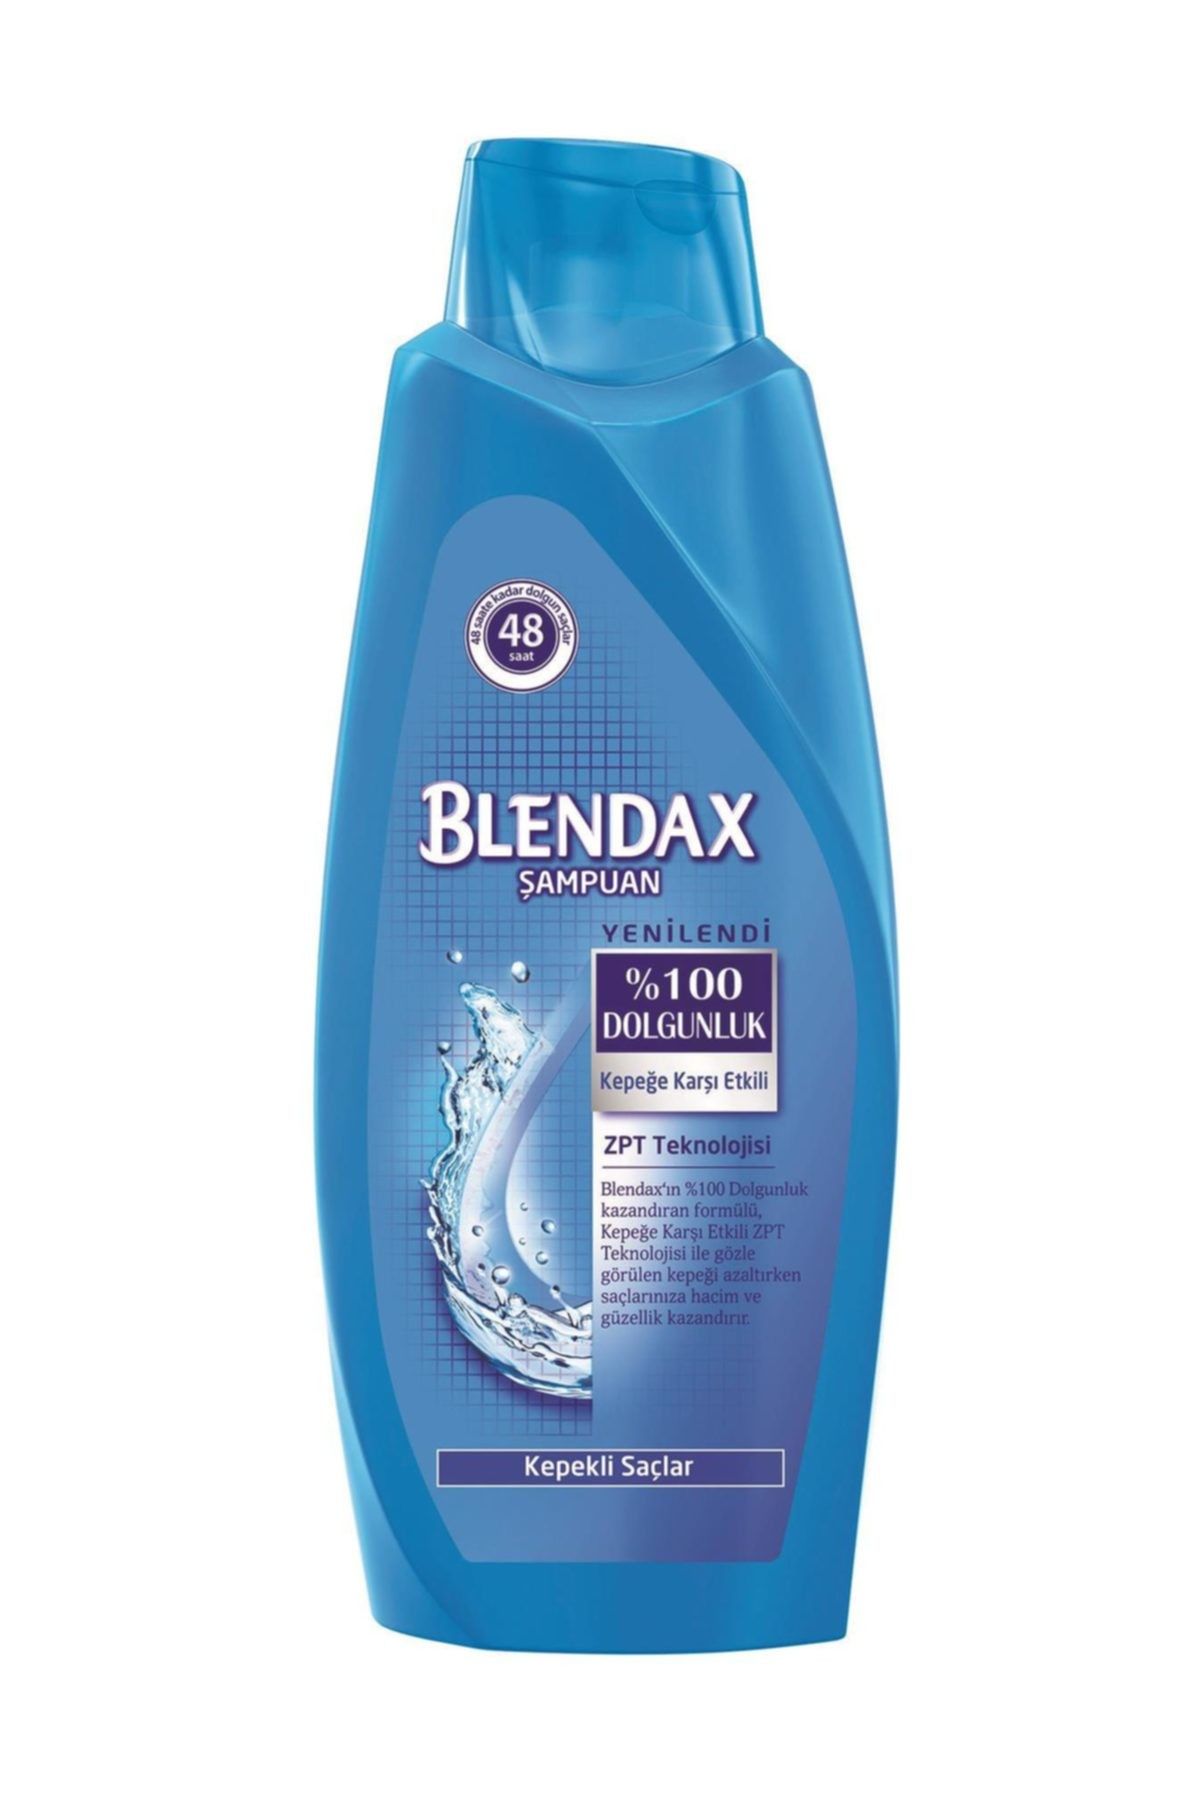 Blendax Erkekler İçin Kepeğe Karşı Etkili Şampuan 550 ml